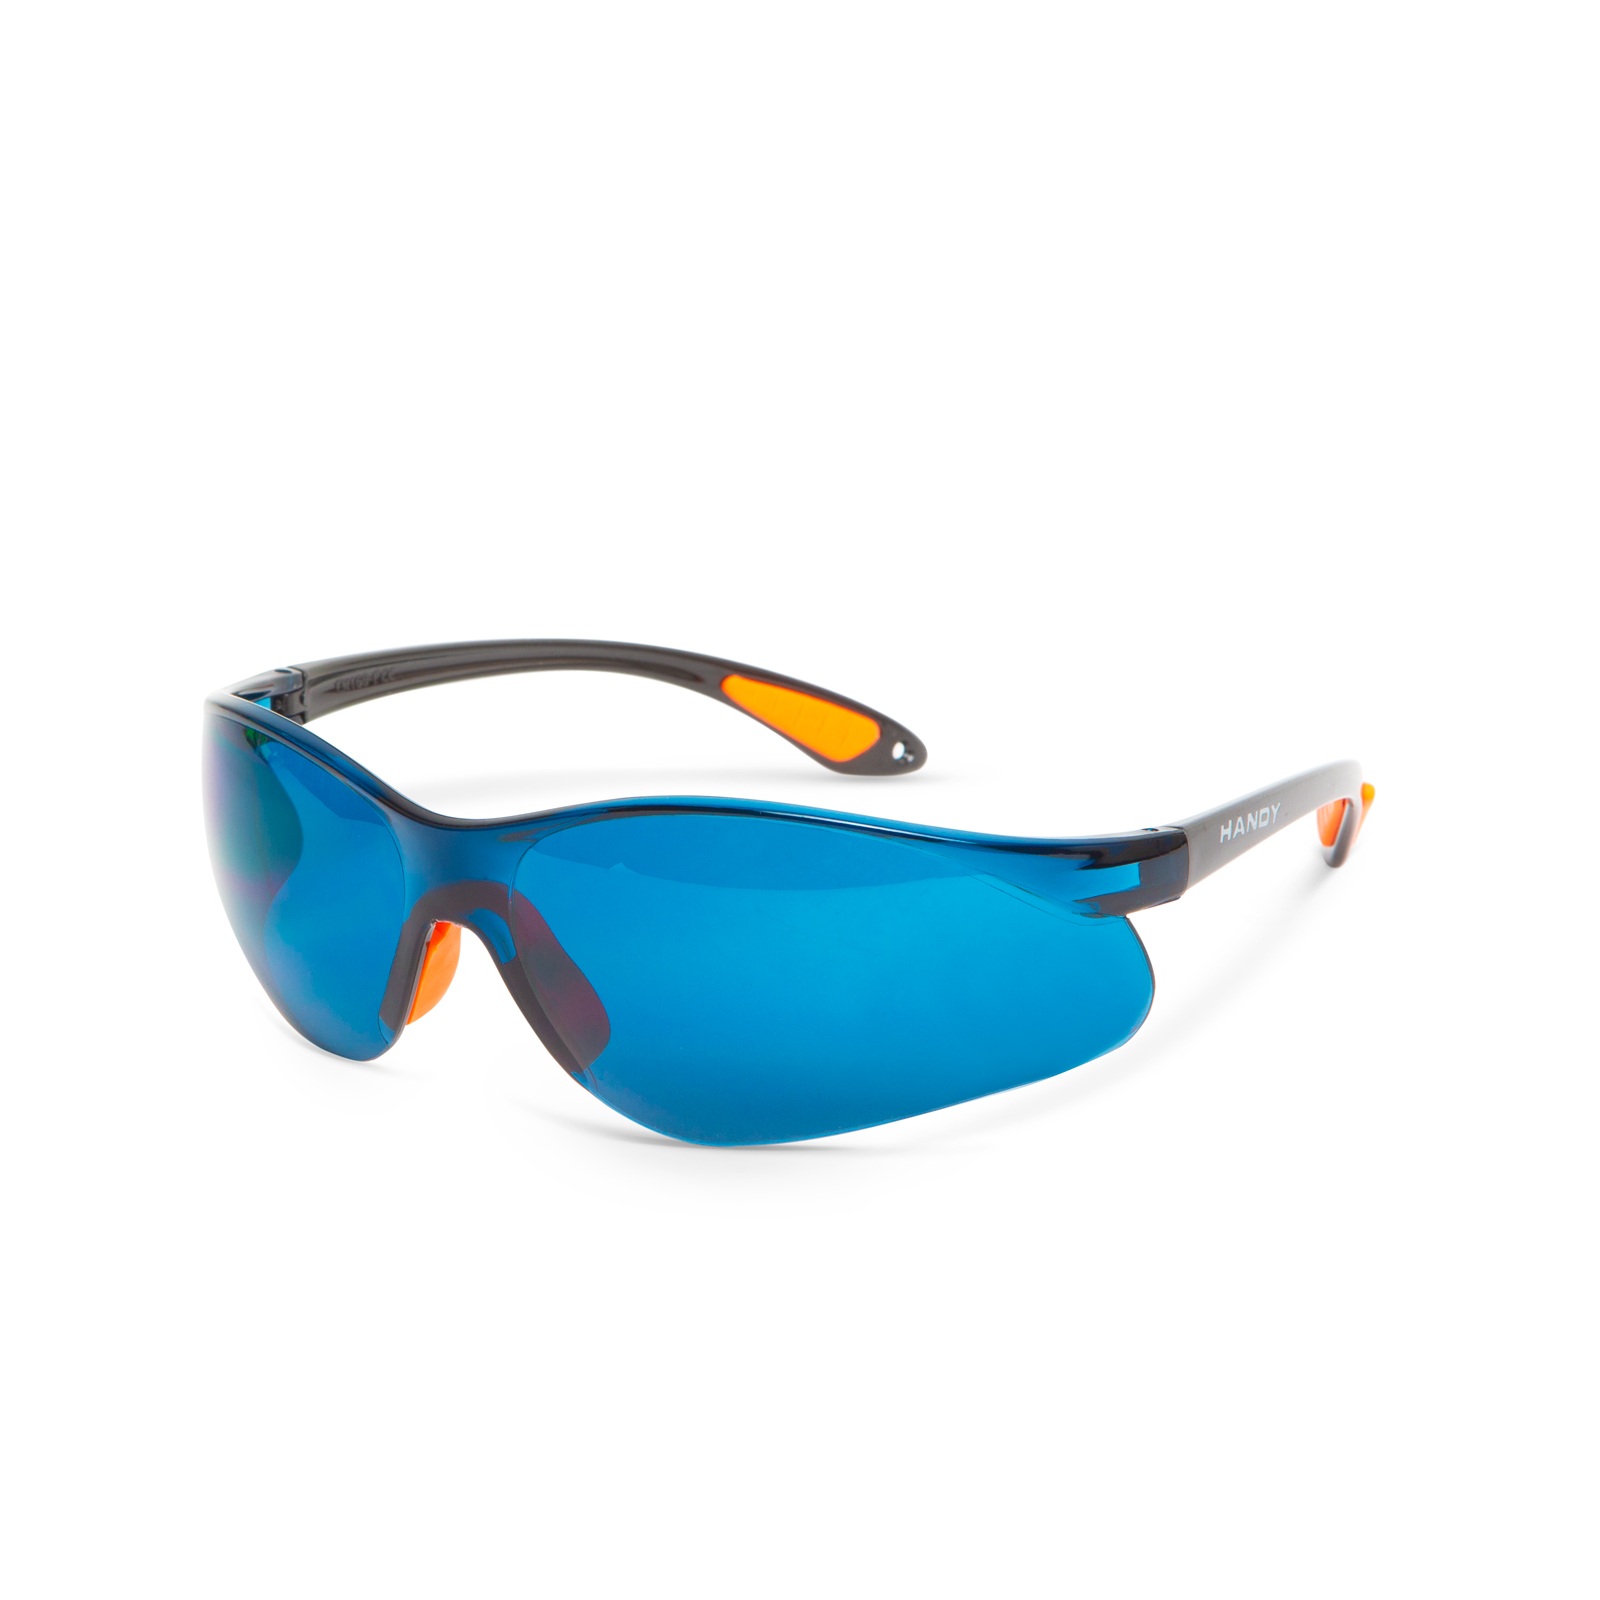 Ochranné okuliare s UV filtrom - modré